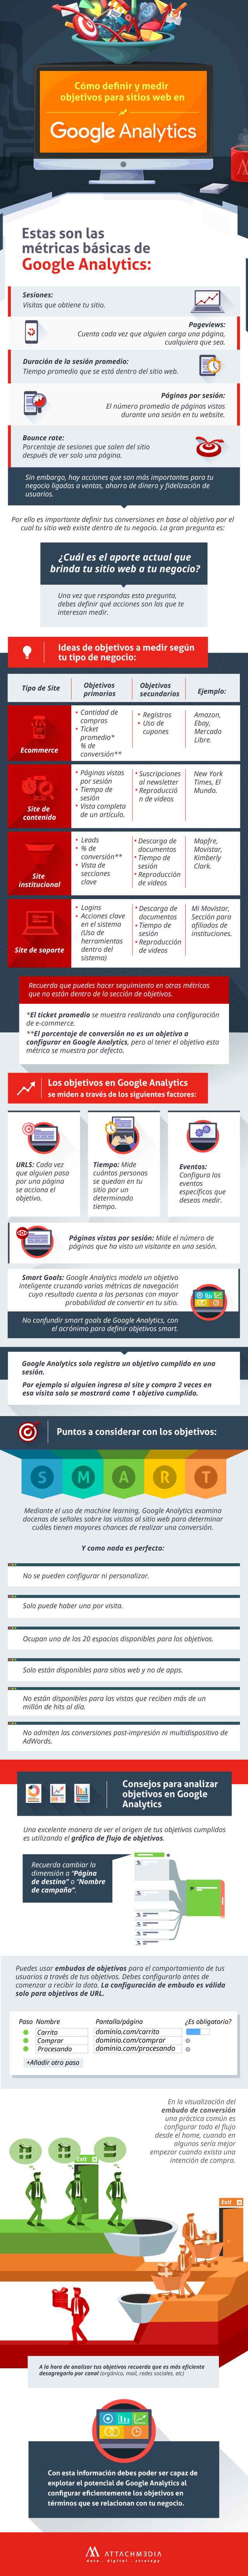 Definir objetivos en Google Analytics